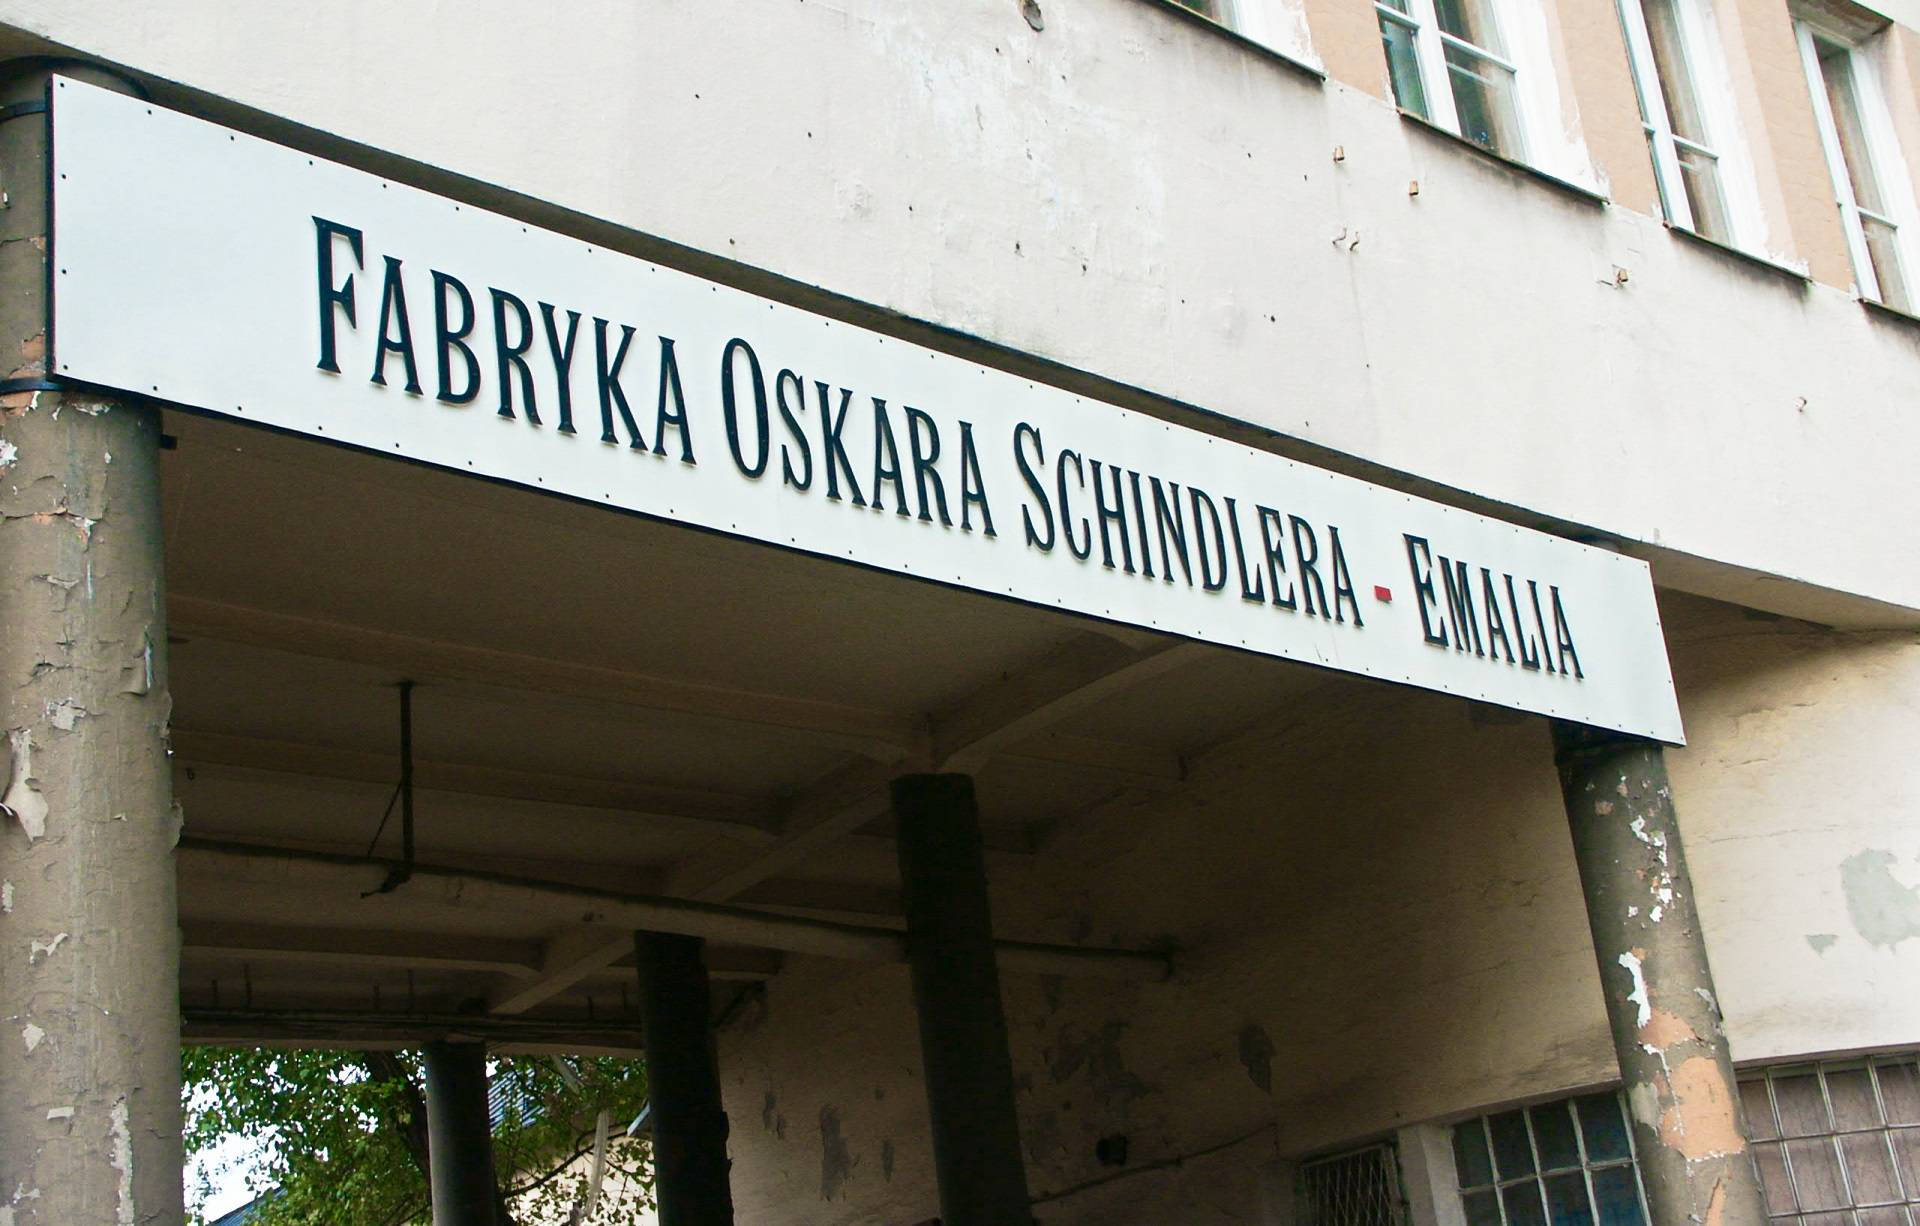 Afábrica De Oskar Schindler Na Polônia. Papel de Parede